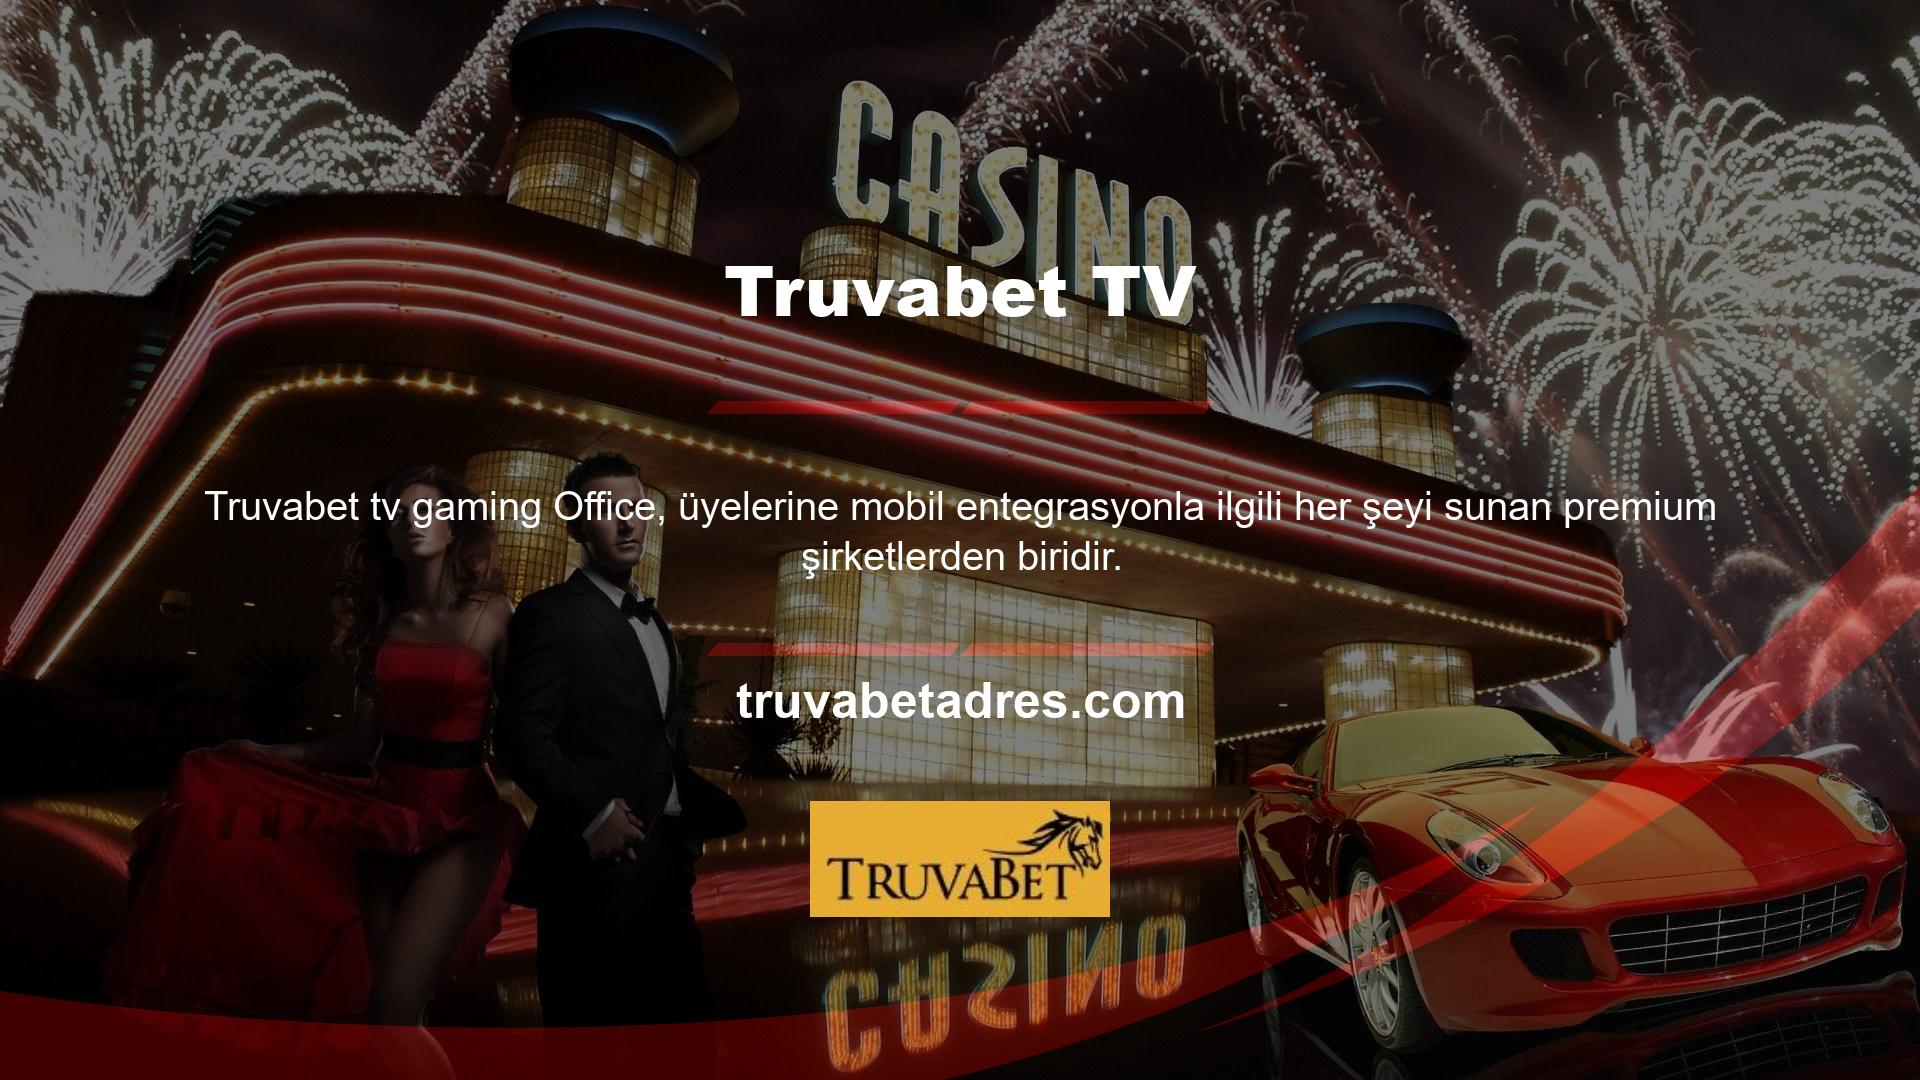 Bu nedenle site, Truvabet TV mobil oyunlarının canlı görüntülerini de sunmaktadır